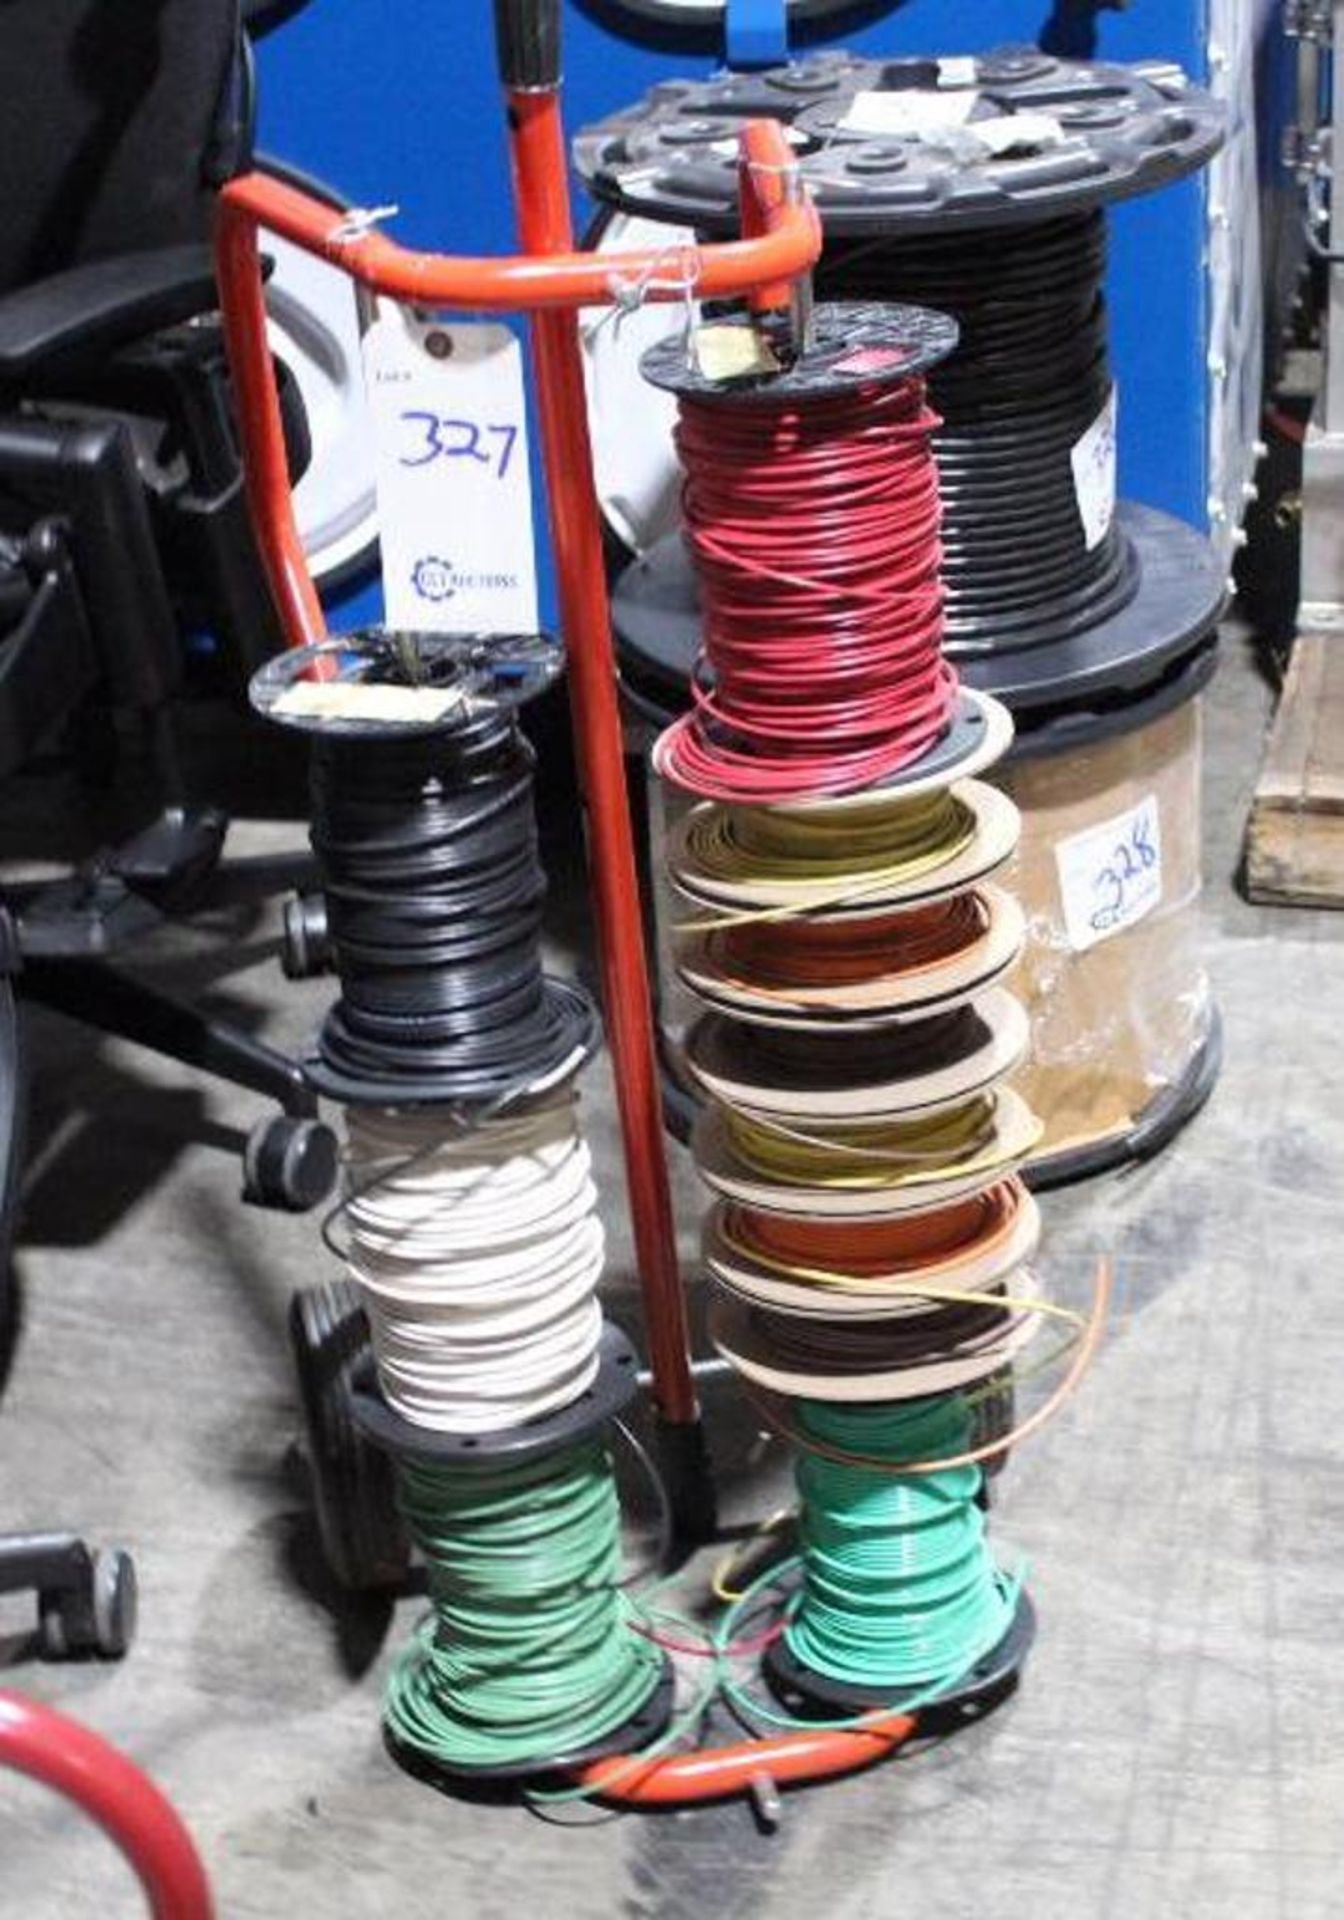 Wire spool rack w/ wire